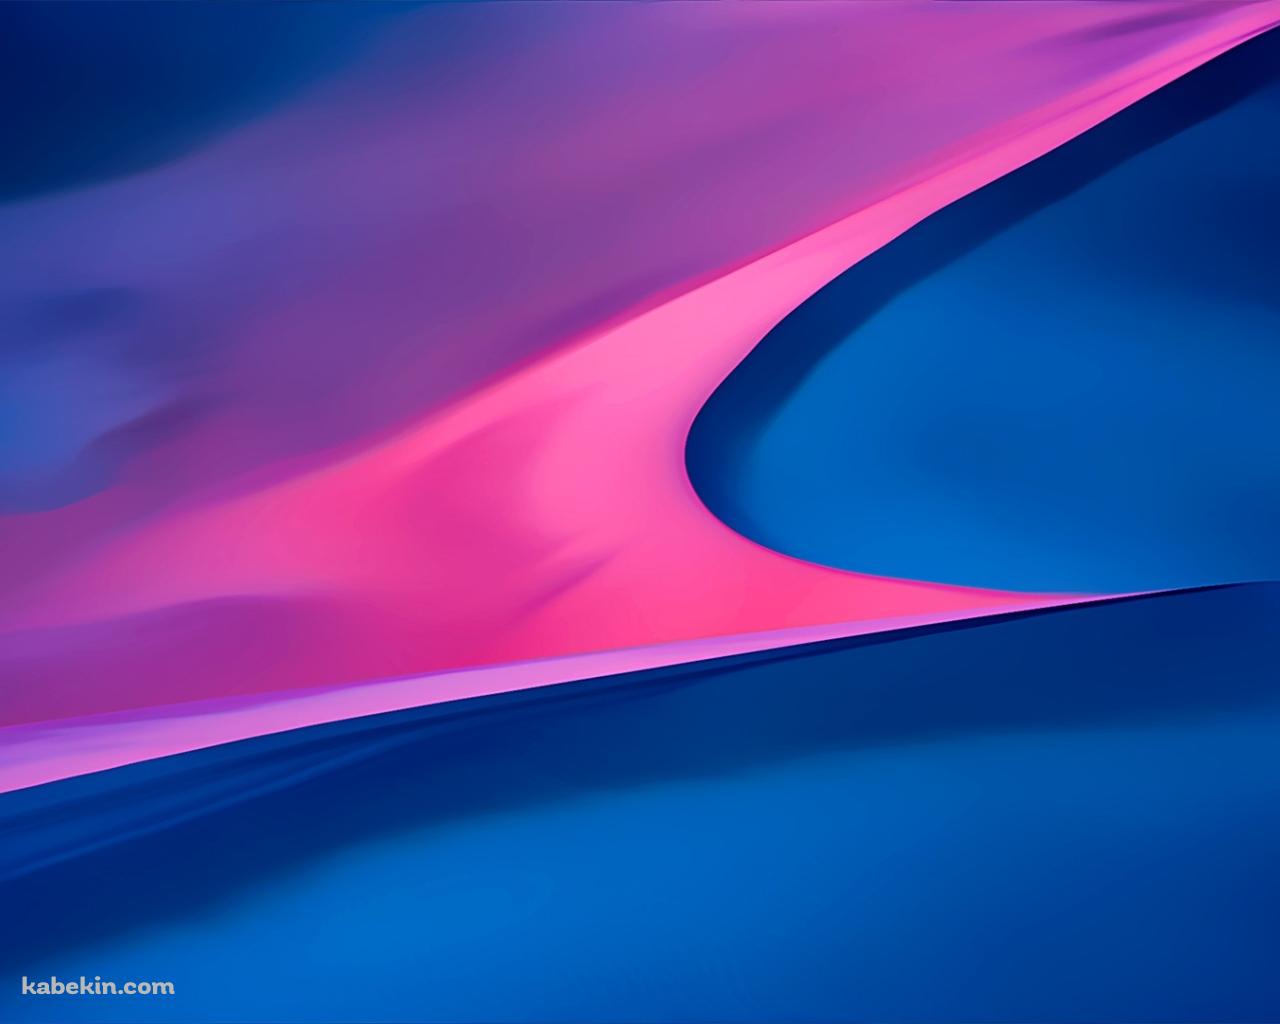 ピンクと青の交わりの壁紙(1280px x 1024px) 高画質 PC・デスクトップ用